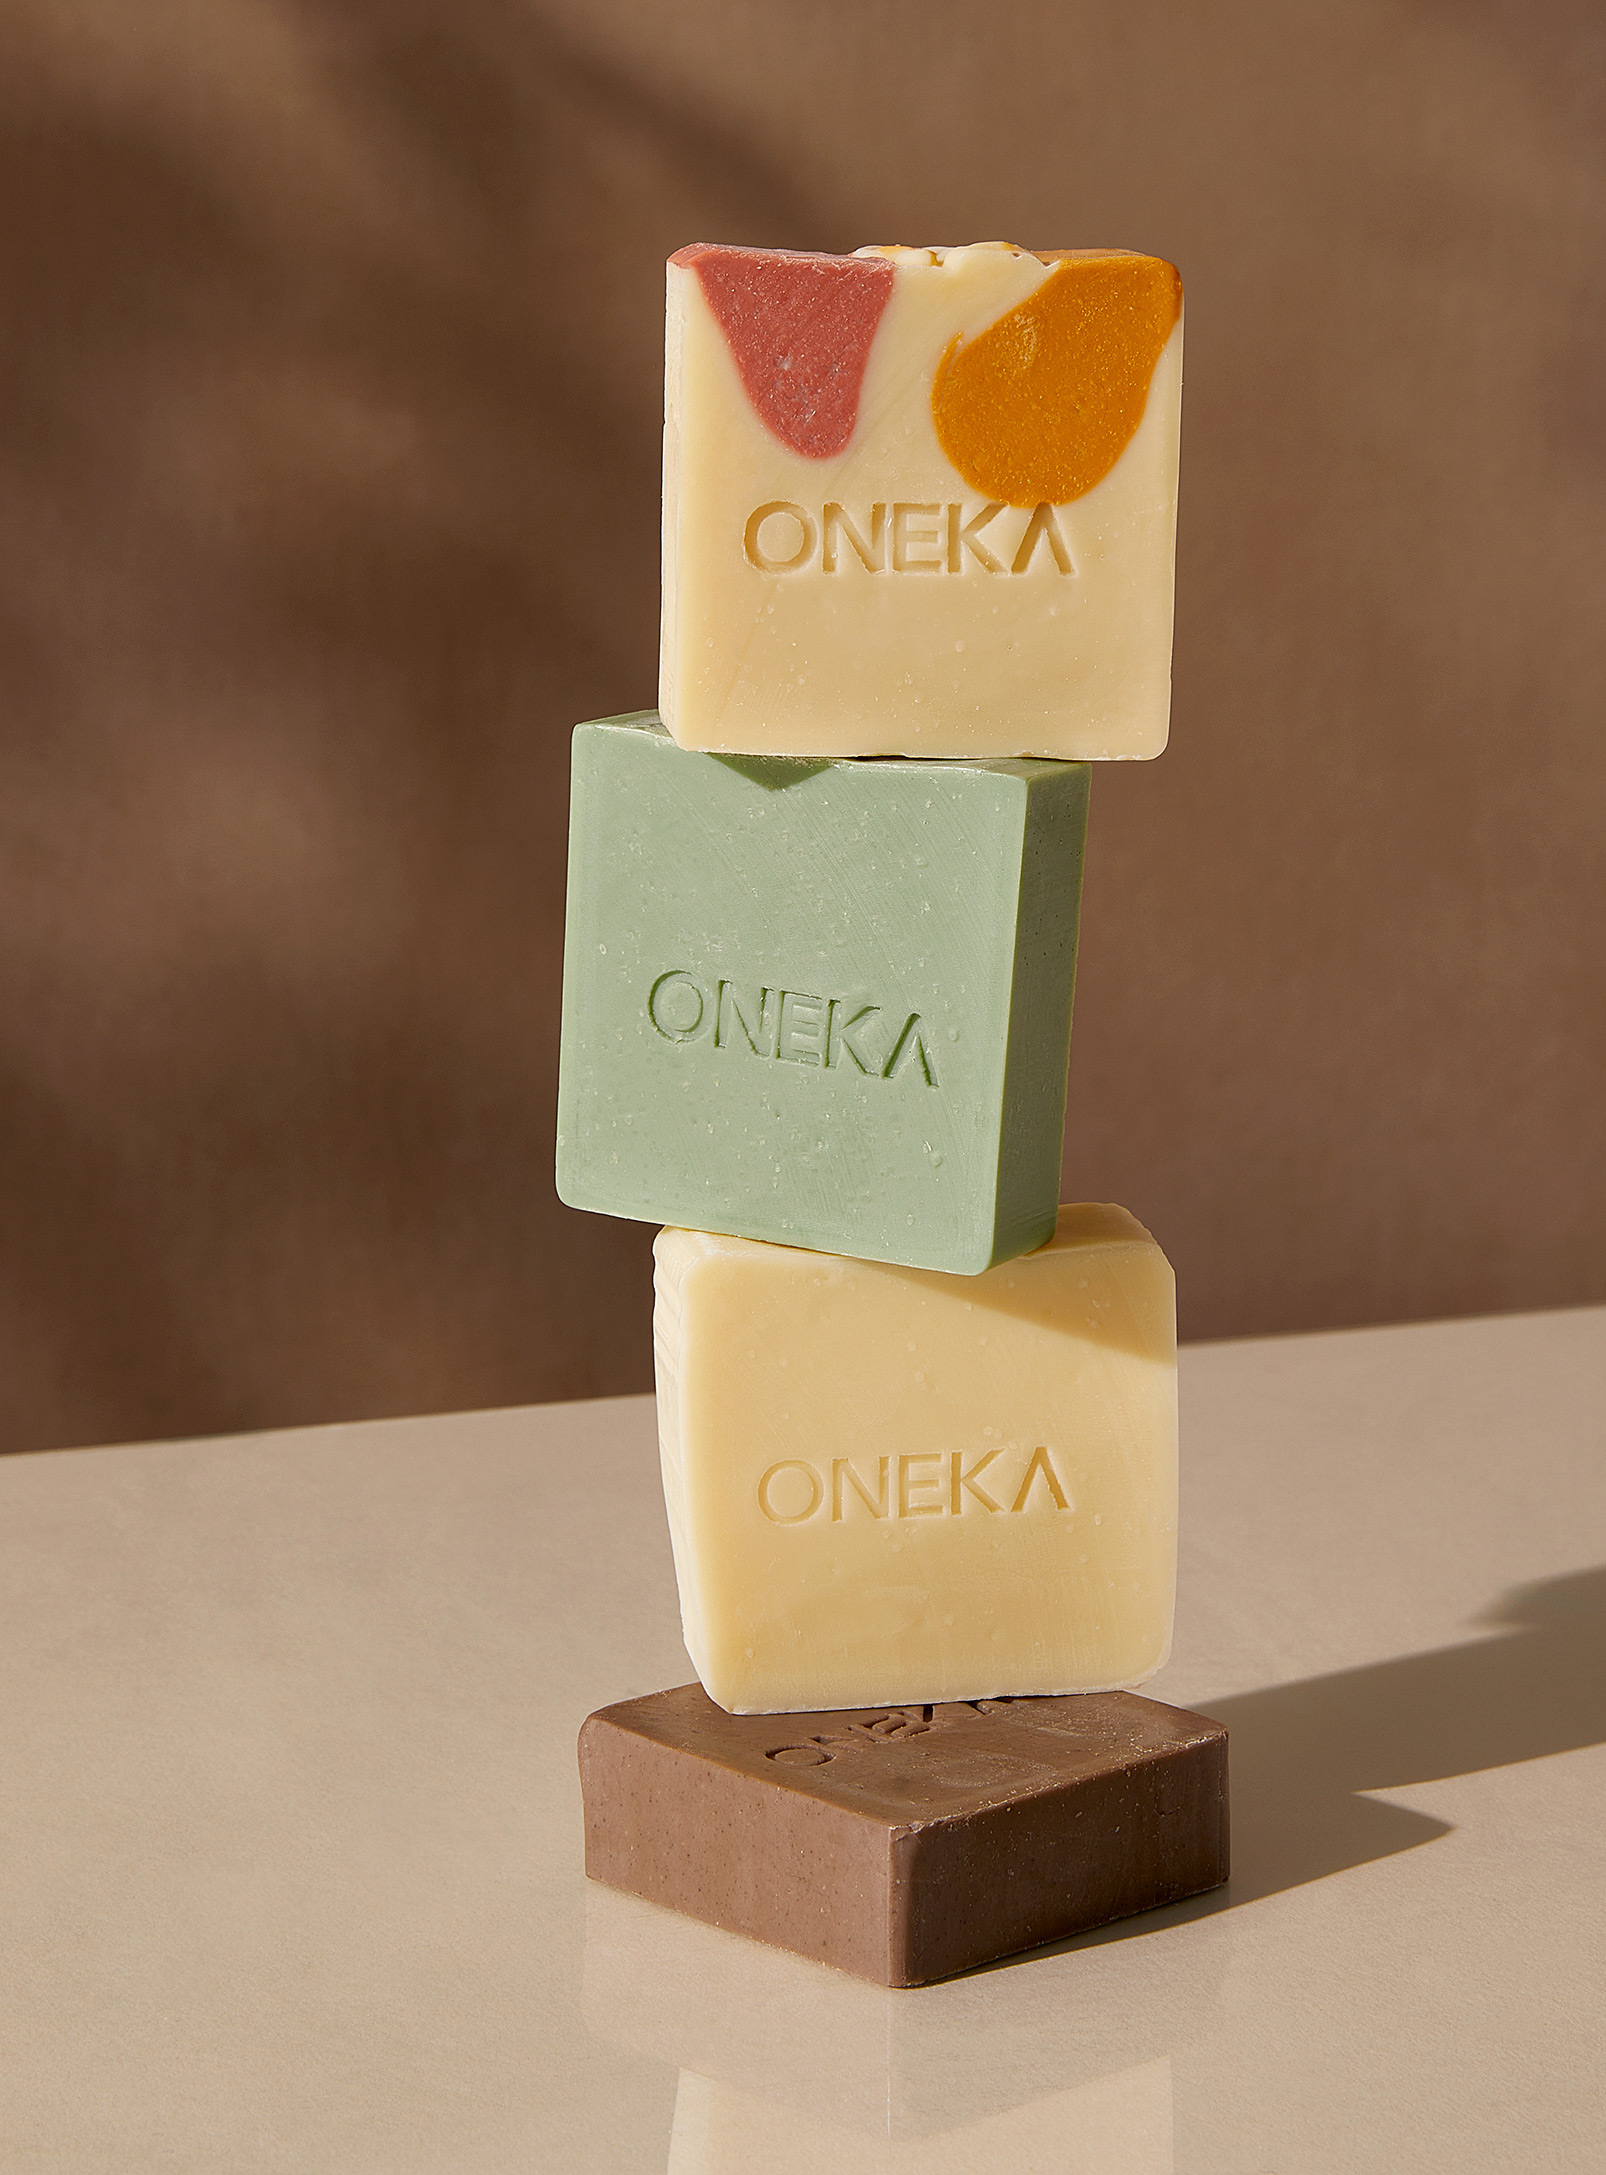 Oneka - L'ensemble de savons pour le corps Ensemble de 4